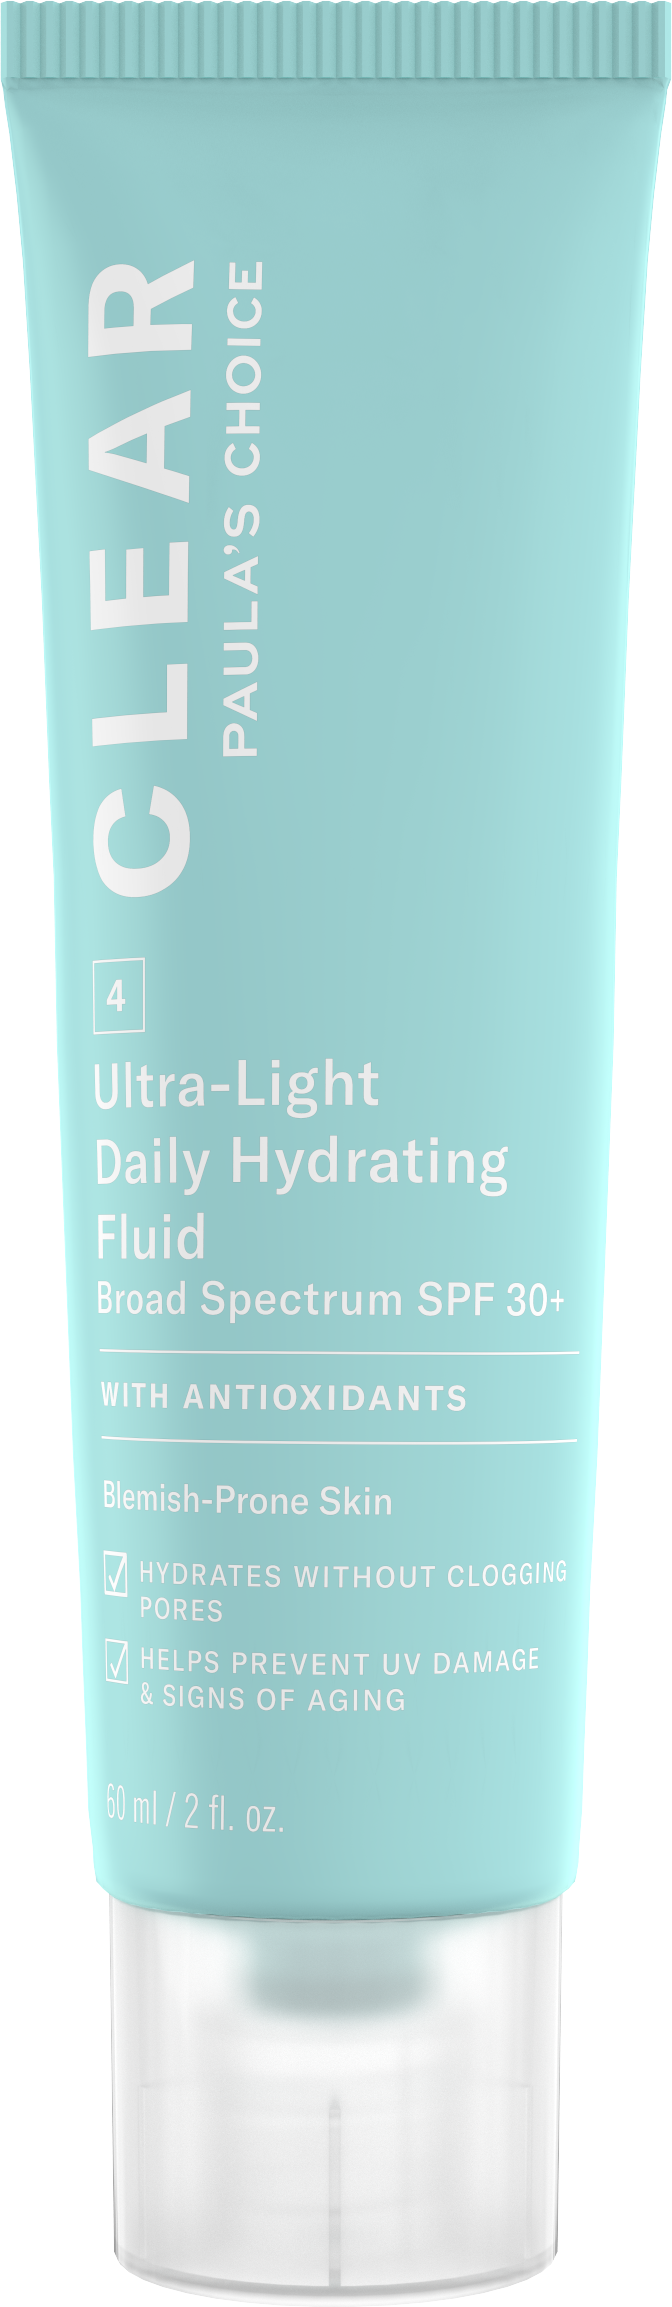 Paula's Choice CLEAR Ultra-Light Daily Hydrating Fluid